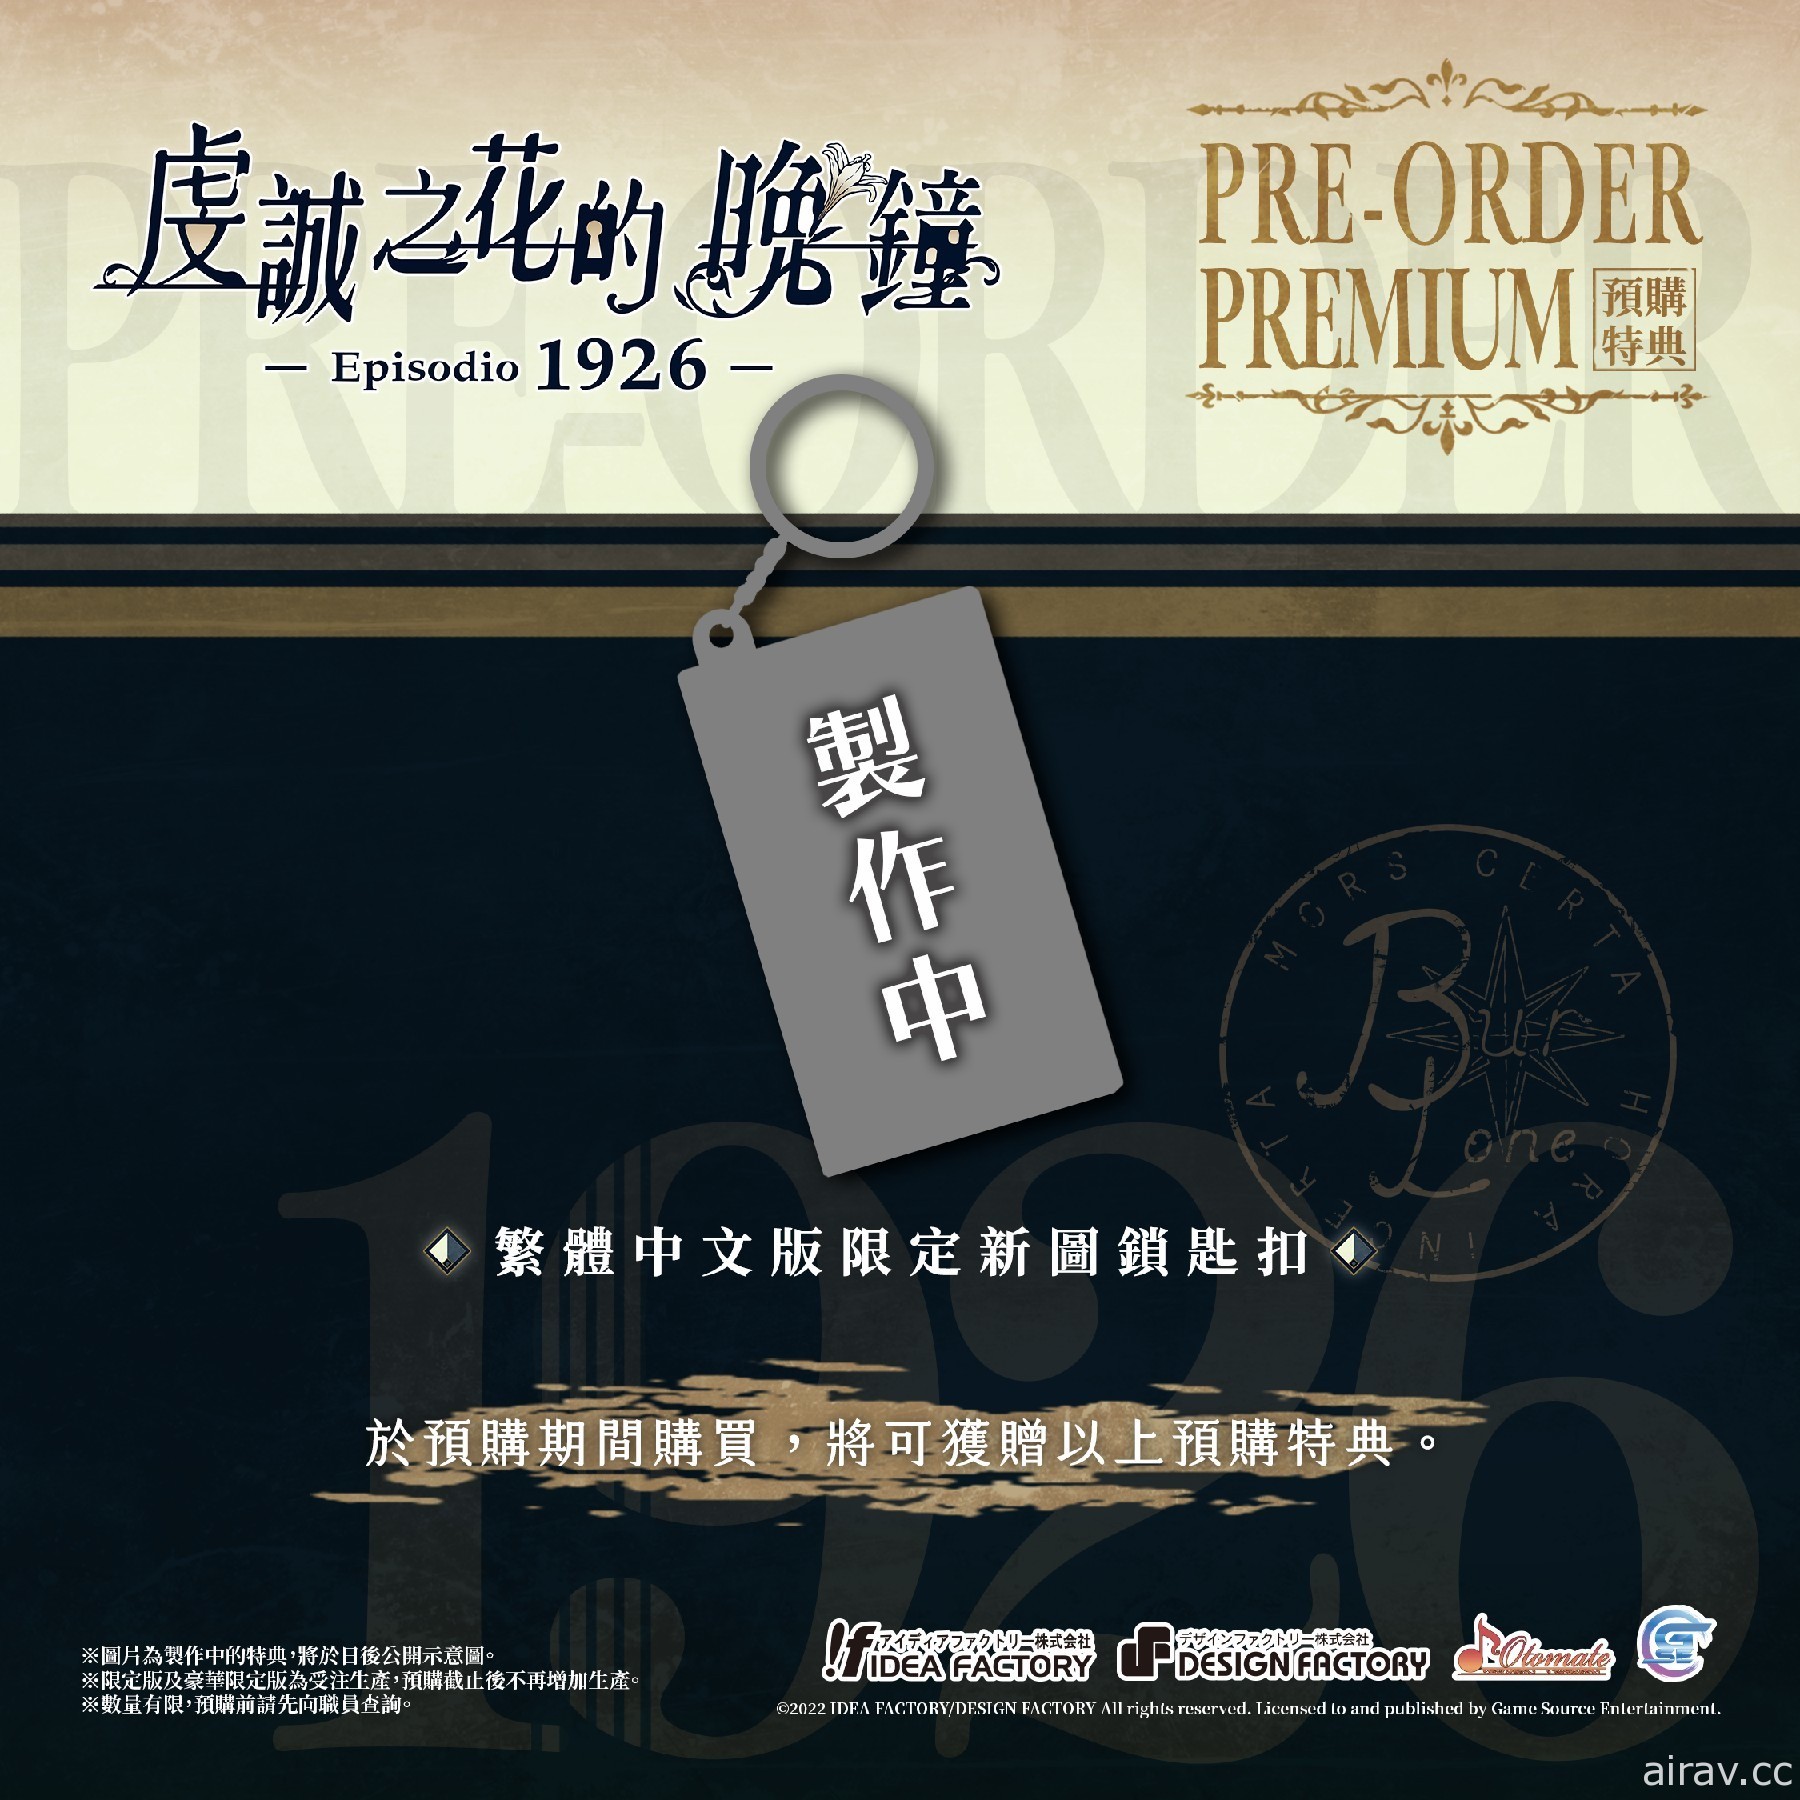 《虔誠之花的晚鐘 Episodio 1926》公開追加特典情報 將設計繁體中文版限定封面